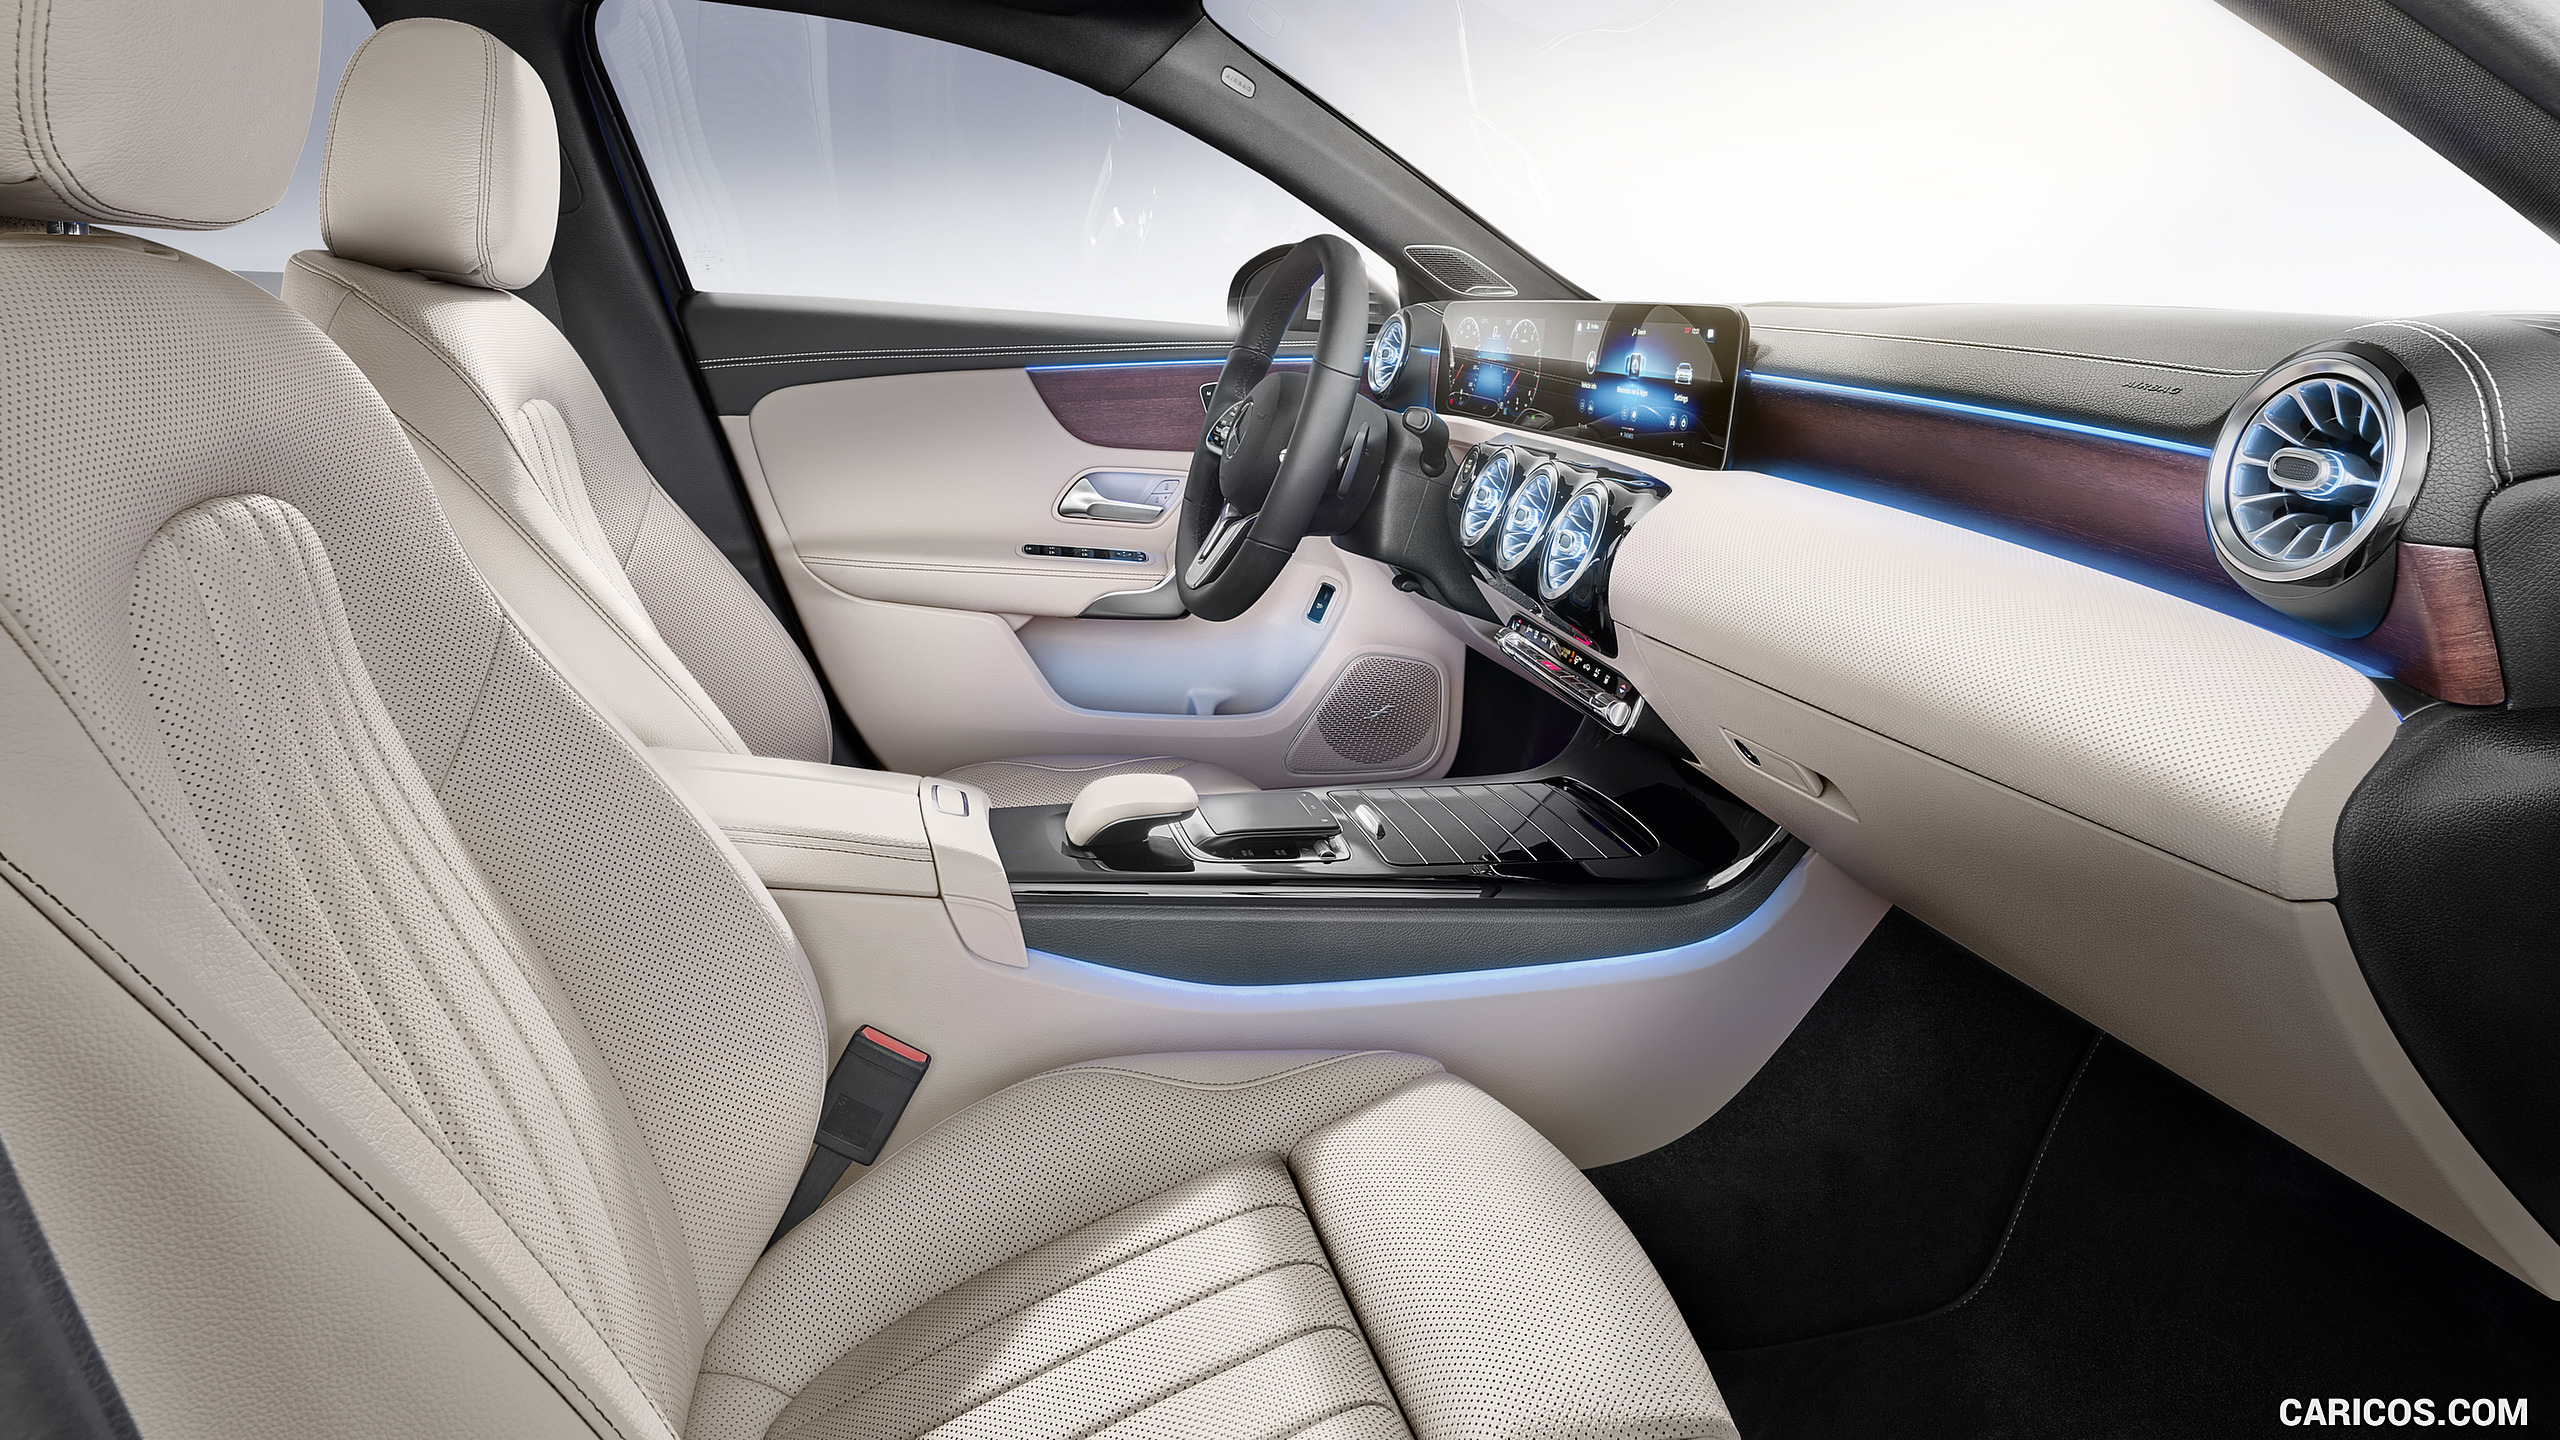 2019 Mercedes-Benz A-Class Sedan - Interior, Seats, #56 of 214